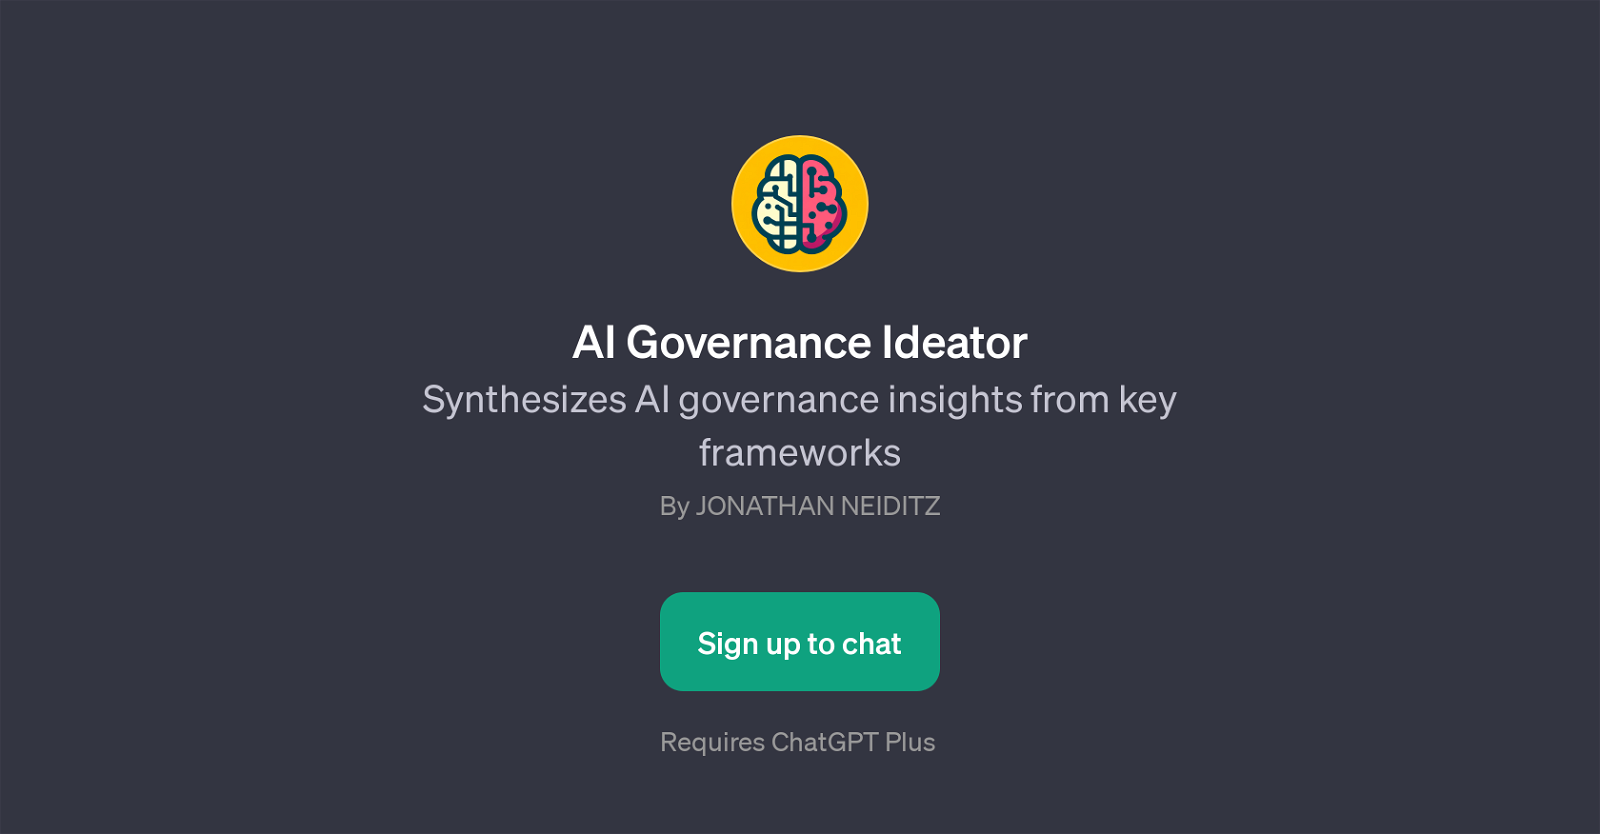 AI Governance Ideator website